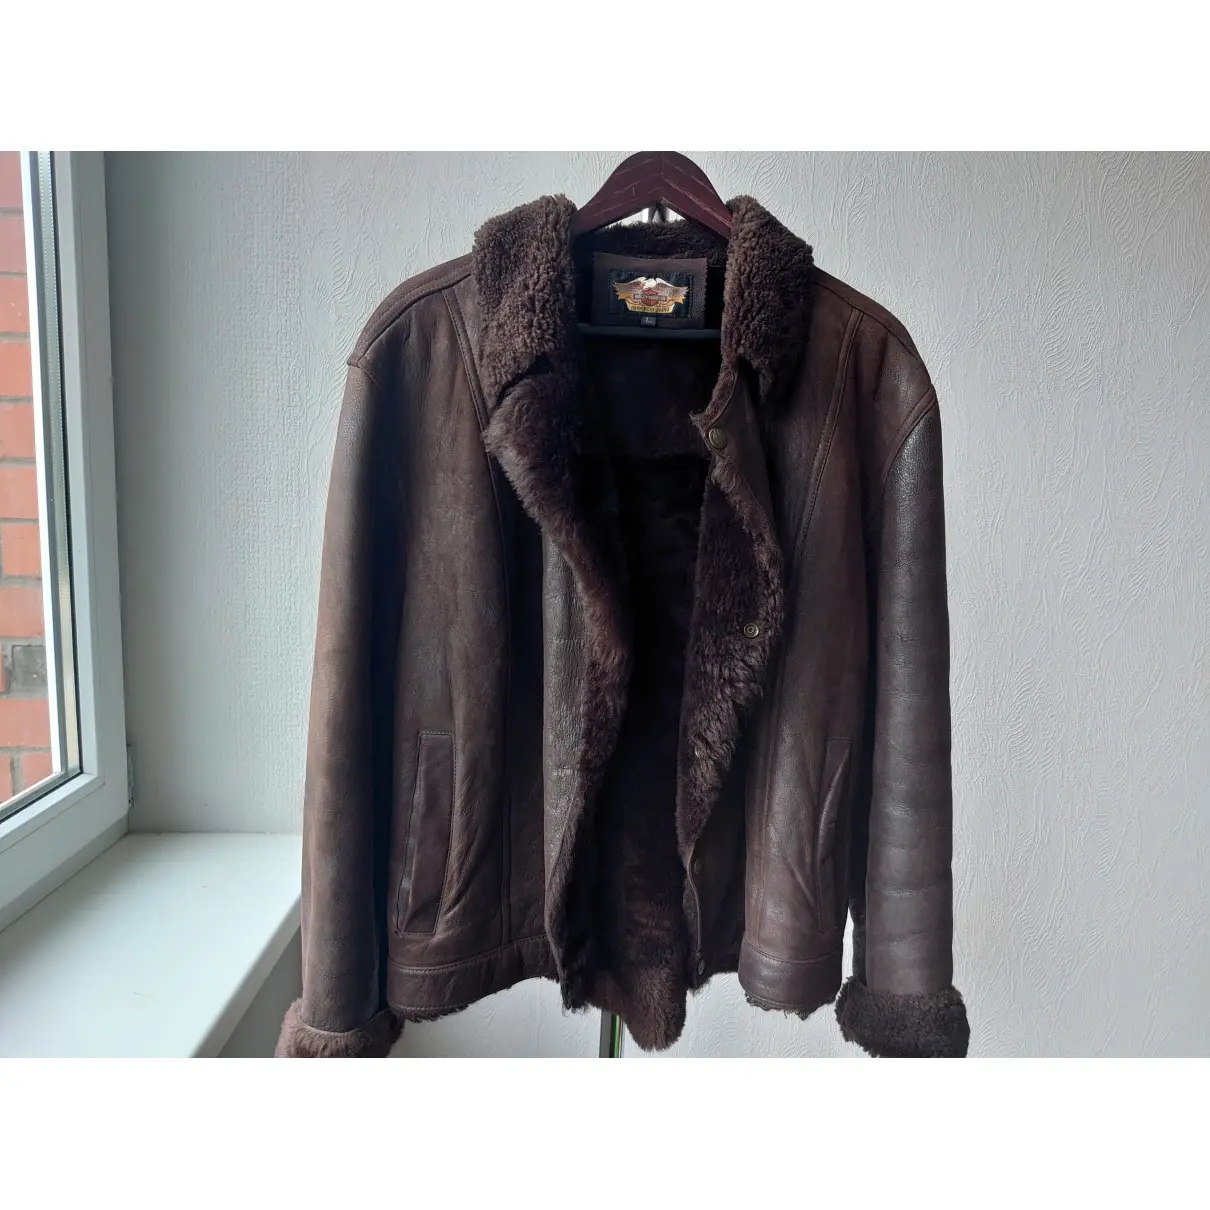 Buy HARLEY DAVIDSON Leather jacket online